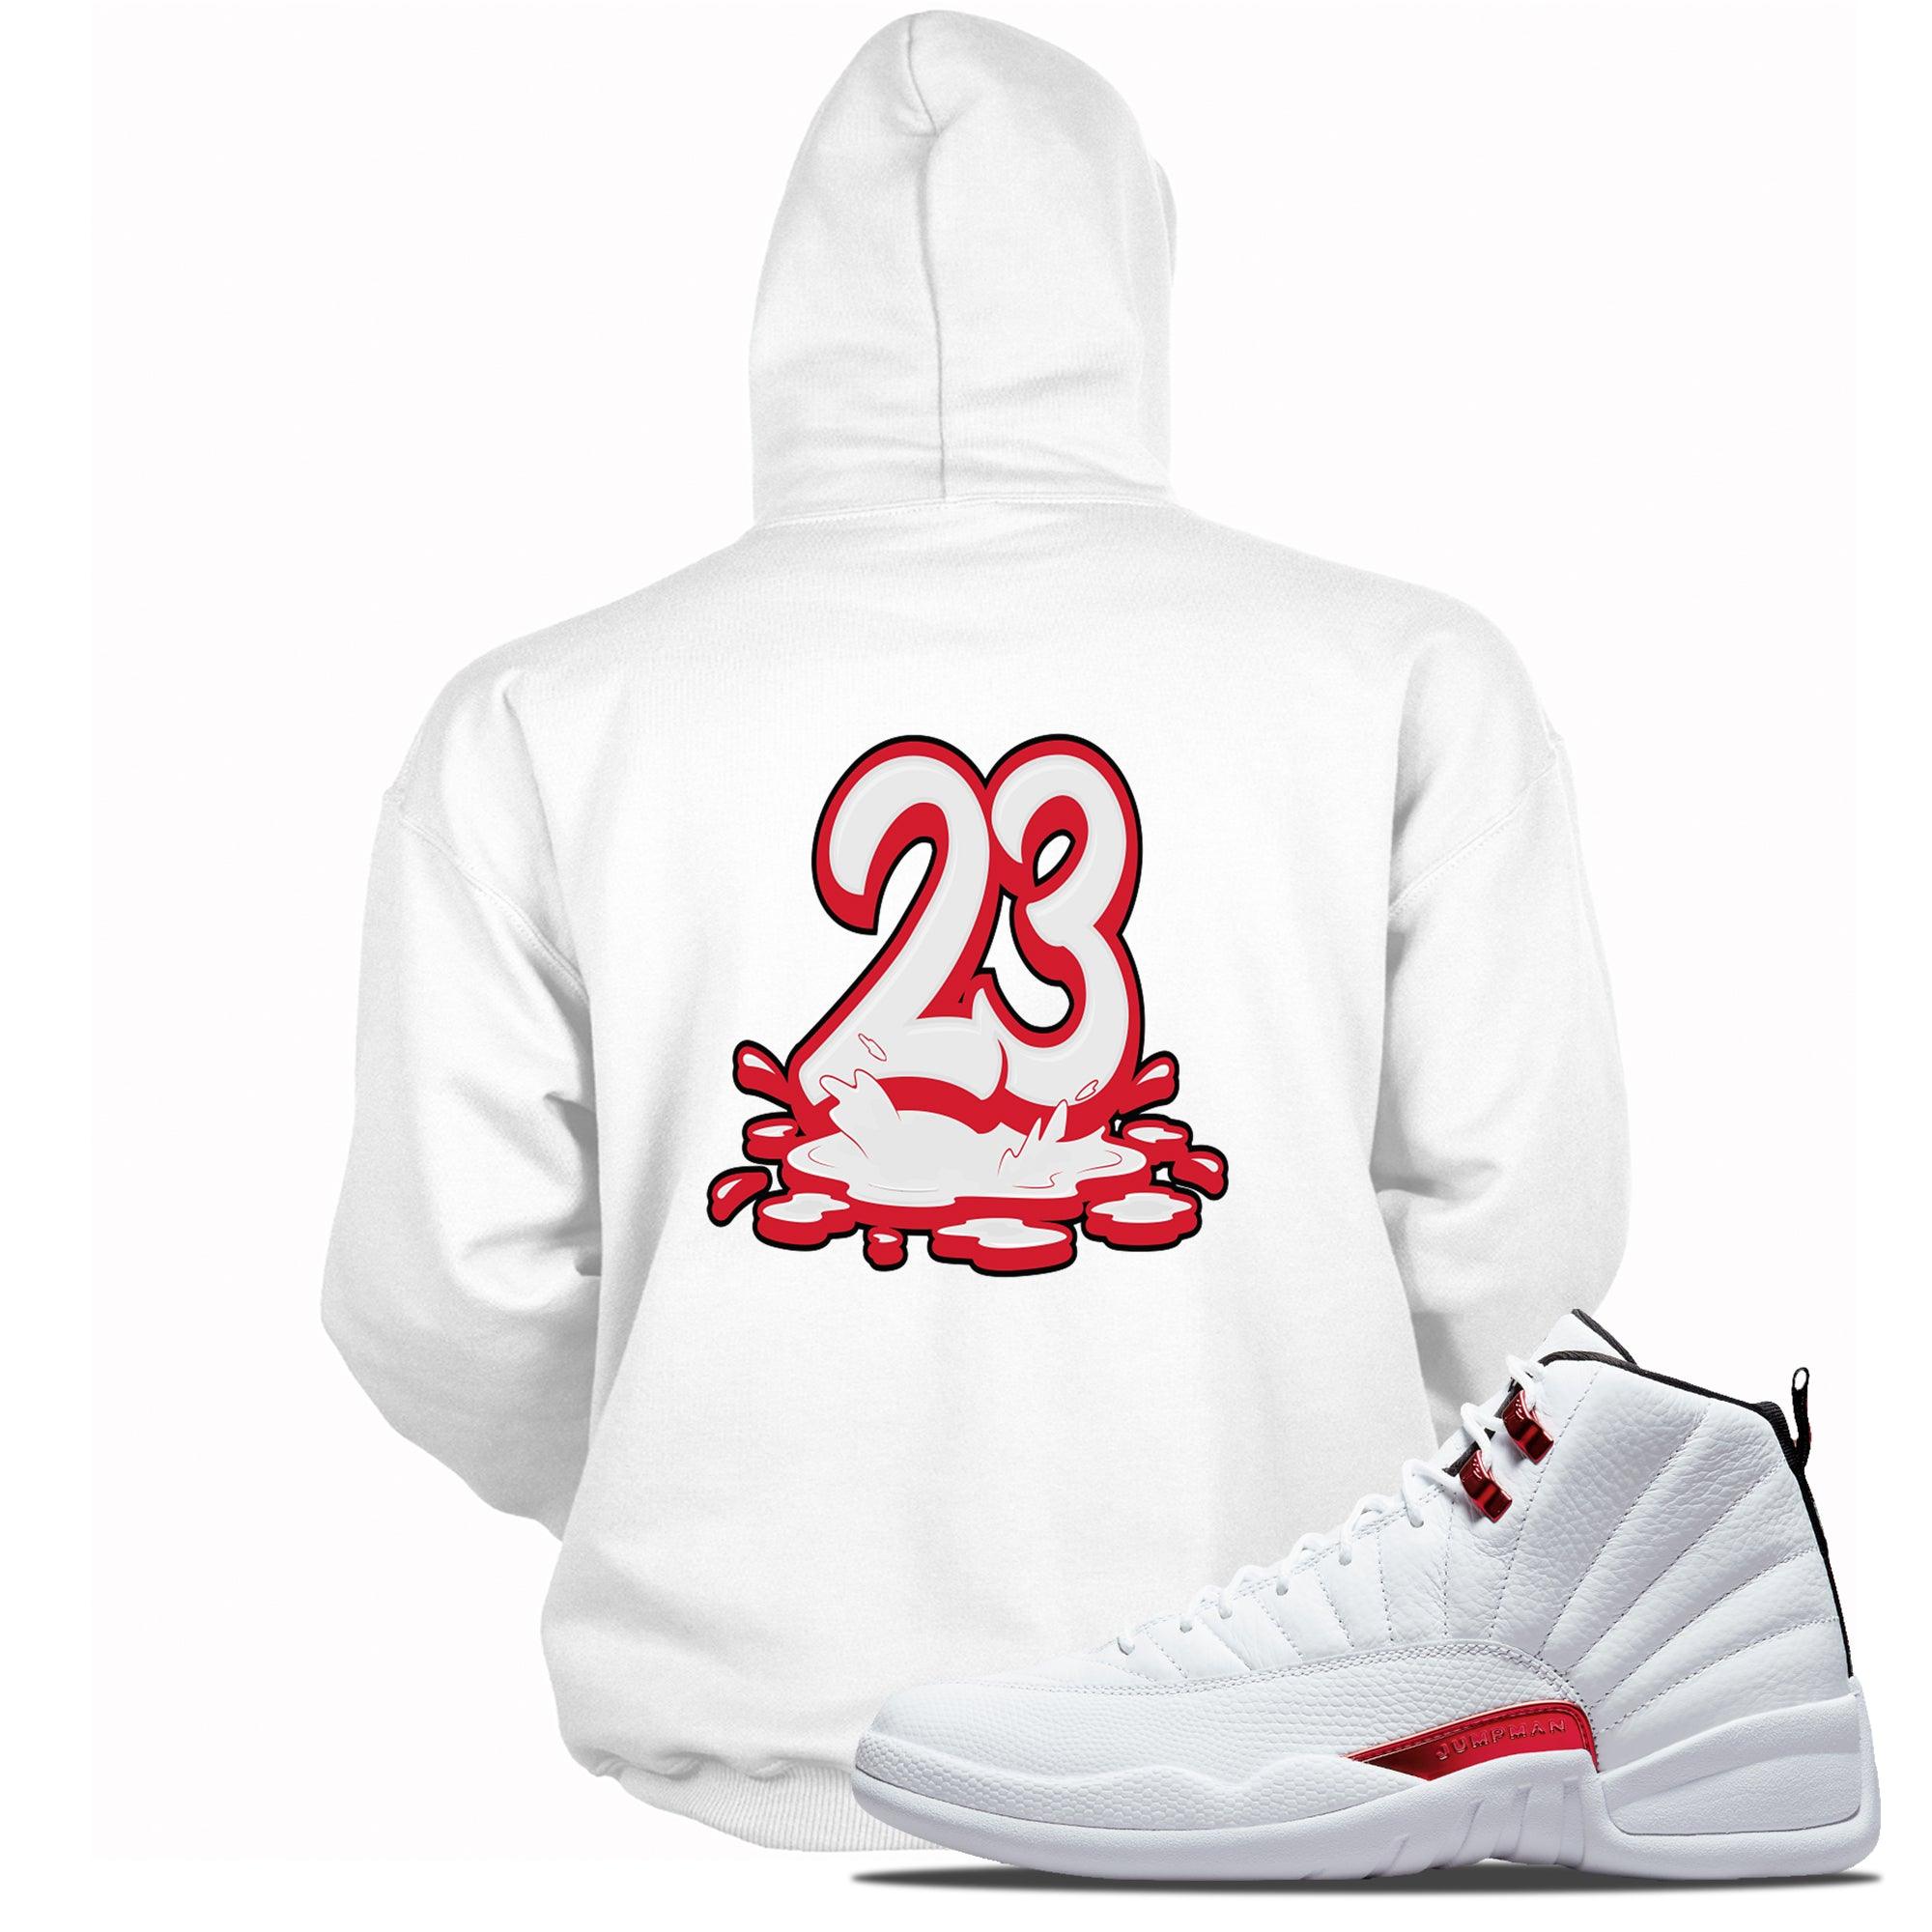 Number 23 Melting Hoodie Air Jordan 12 Twist photo